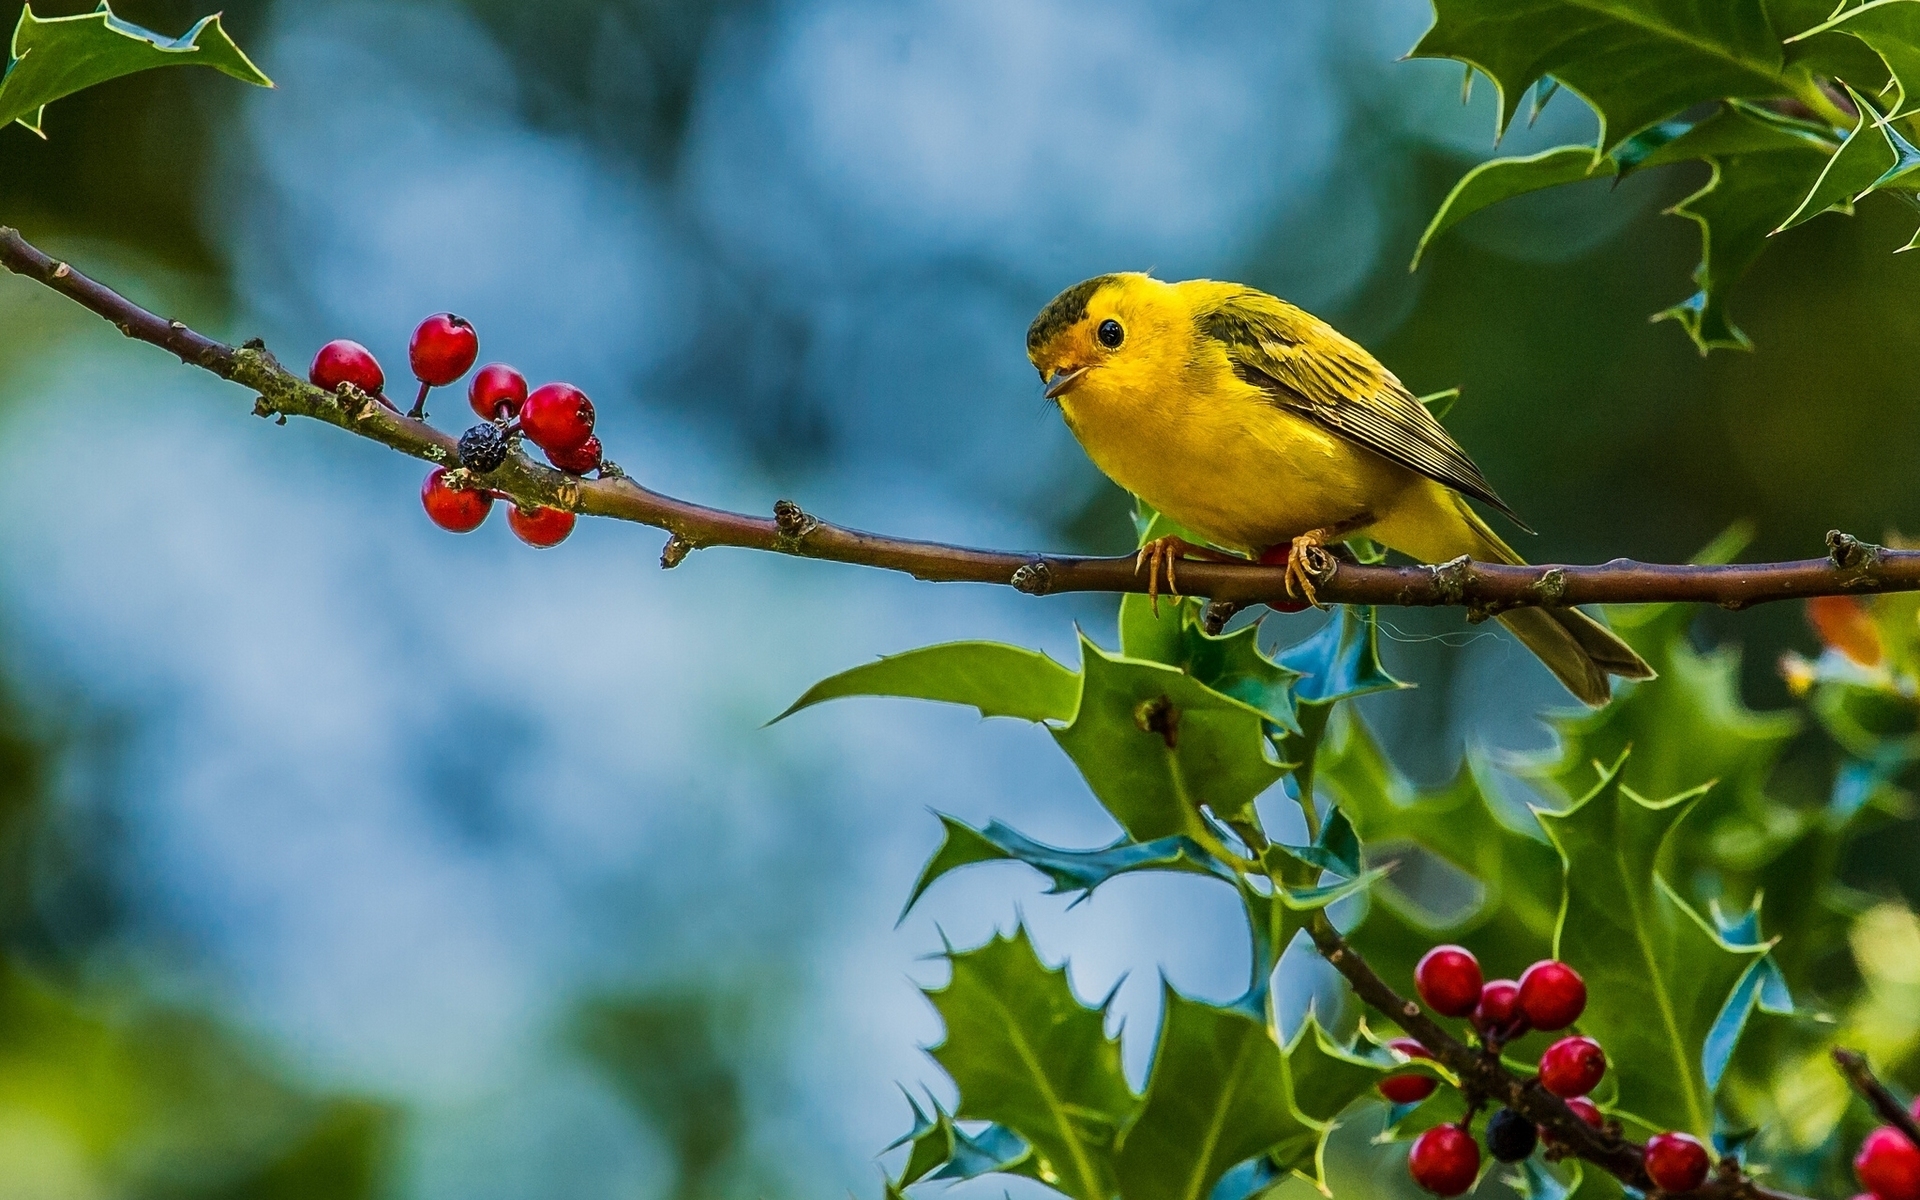 Cute Little Yellow Bird for 1920 x 1200 widescreen resolution